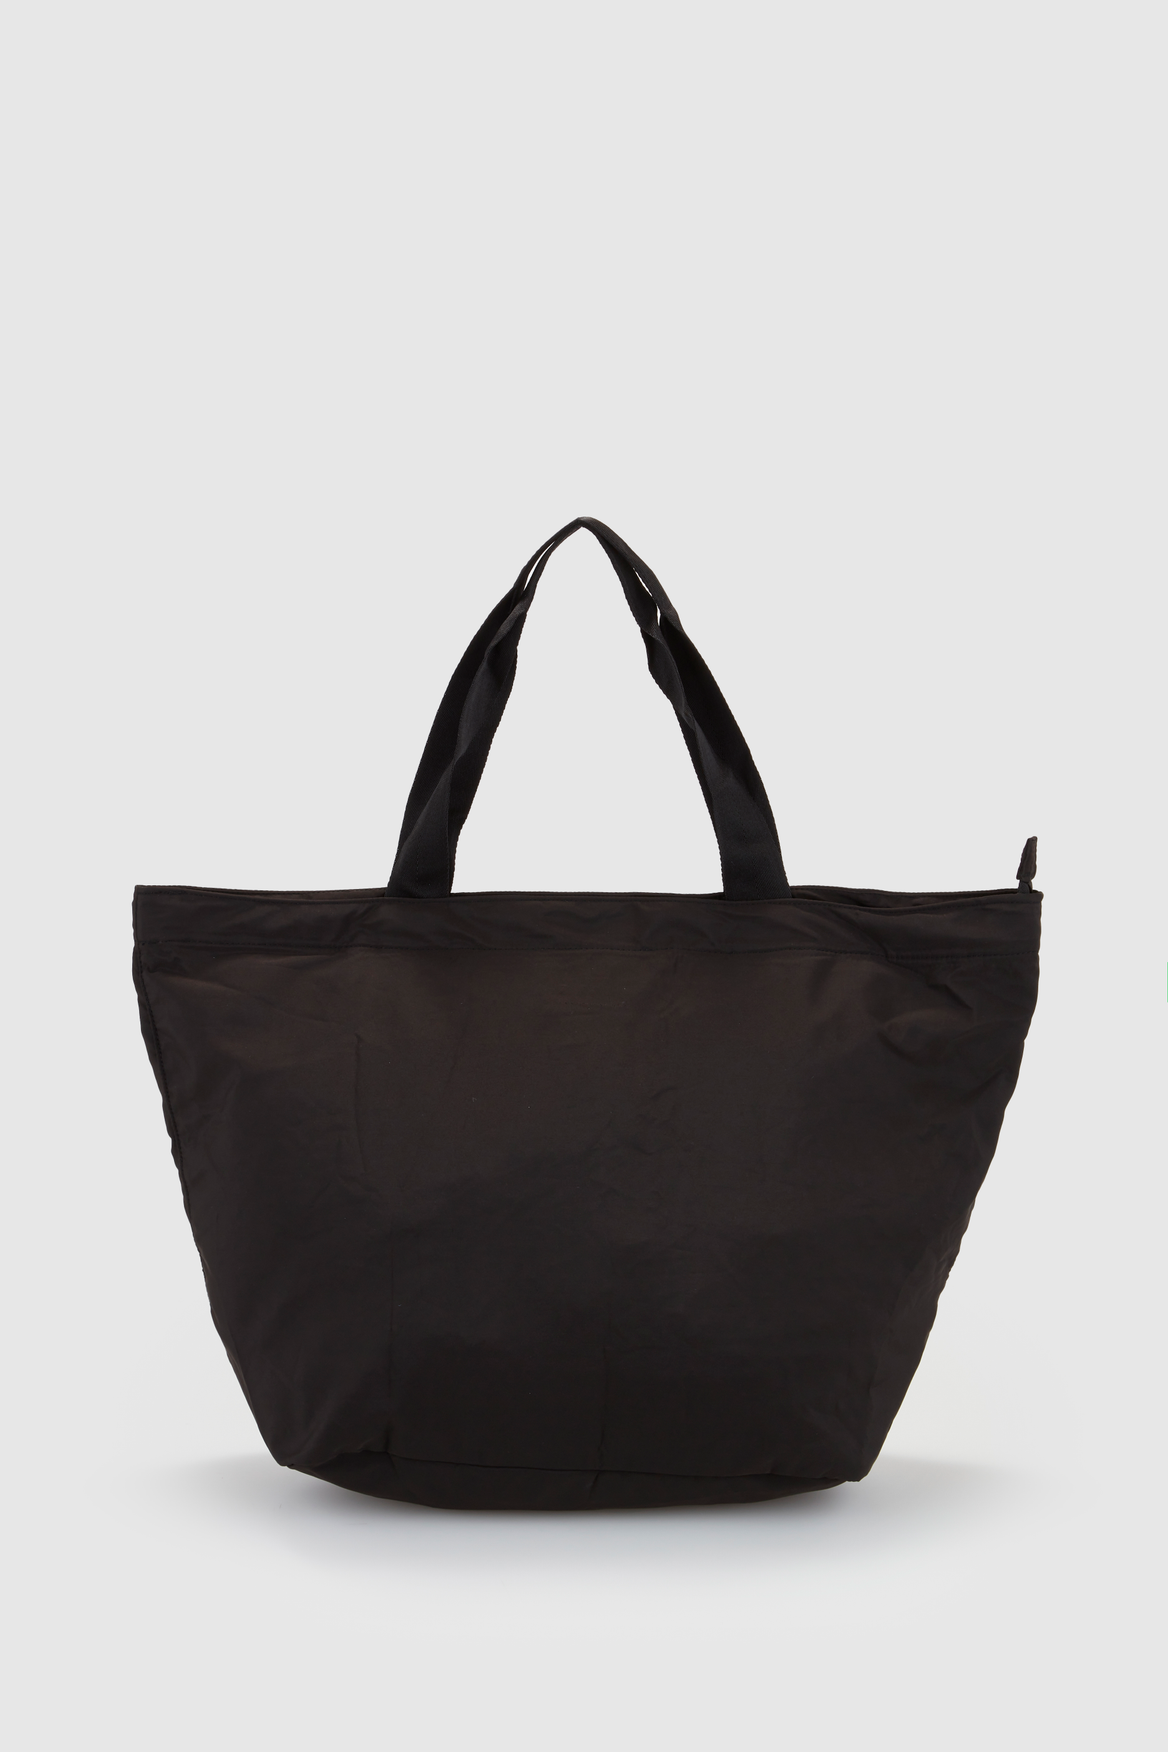 Nere Up Tote Bag – Strandbags Australia